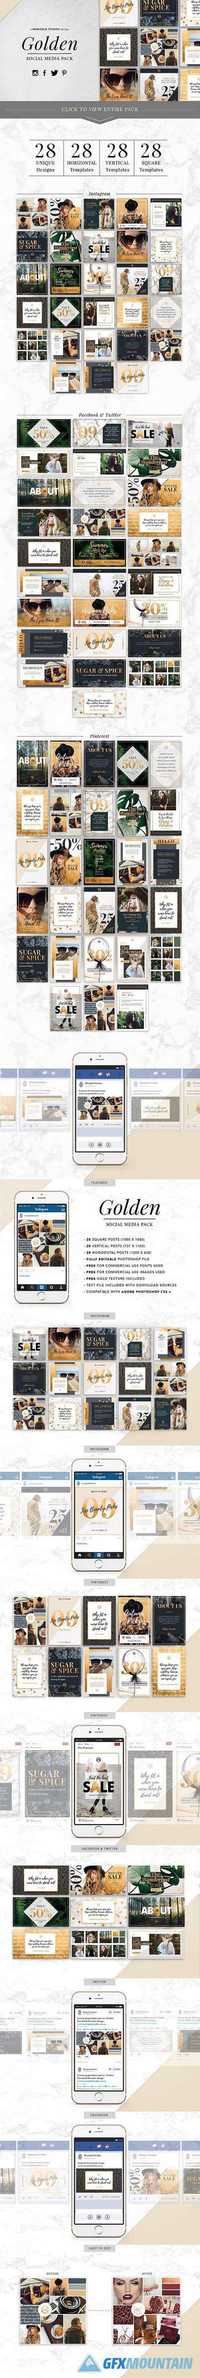 GOLDEN Theme | Social Media Pack 1032915